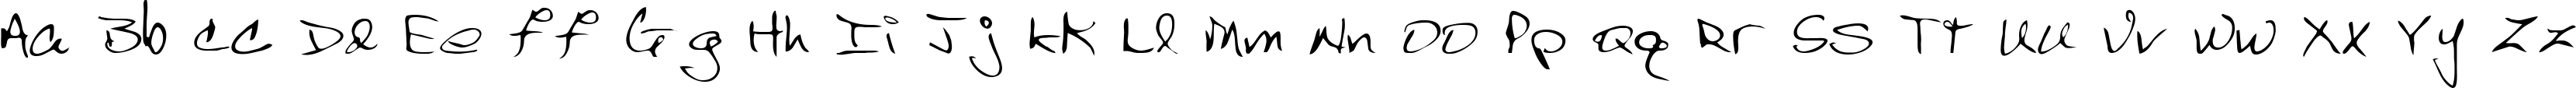 Пример написания английского алфавита шрифтом Scraw-Light